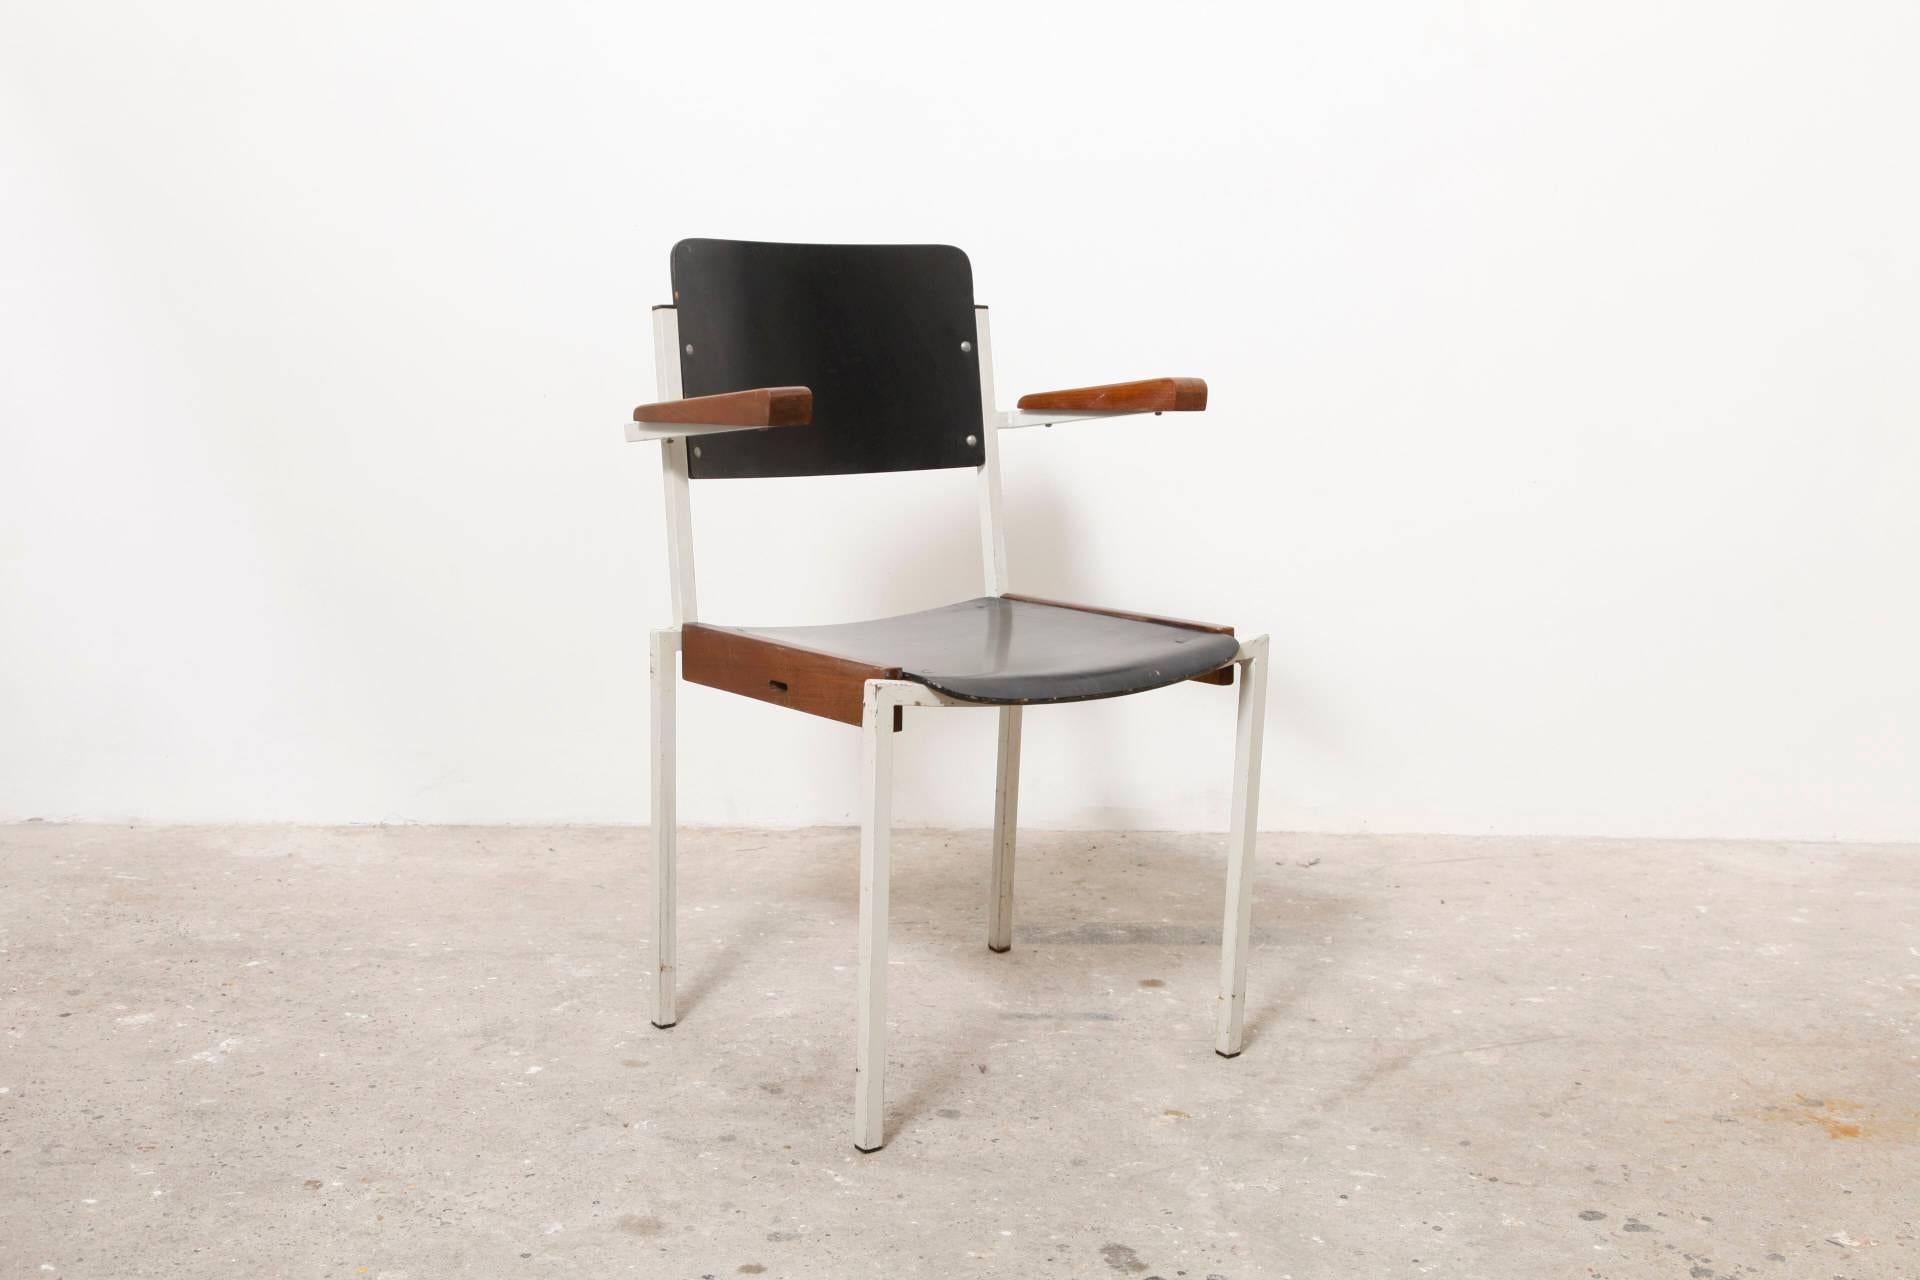 Ces chaises conçues par W H. Gispen ont été fabriquées dans les années 1950 pour Riemersma.
 
Les dossiers des chaises sont en bois laqué noir, les accoudoirs sont naturellement en teck et ont un aspect brut de patine, le cadre est en métal émaillé,